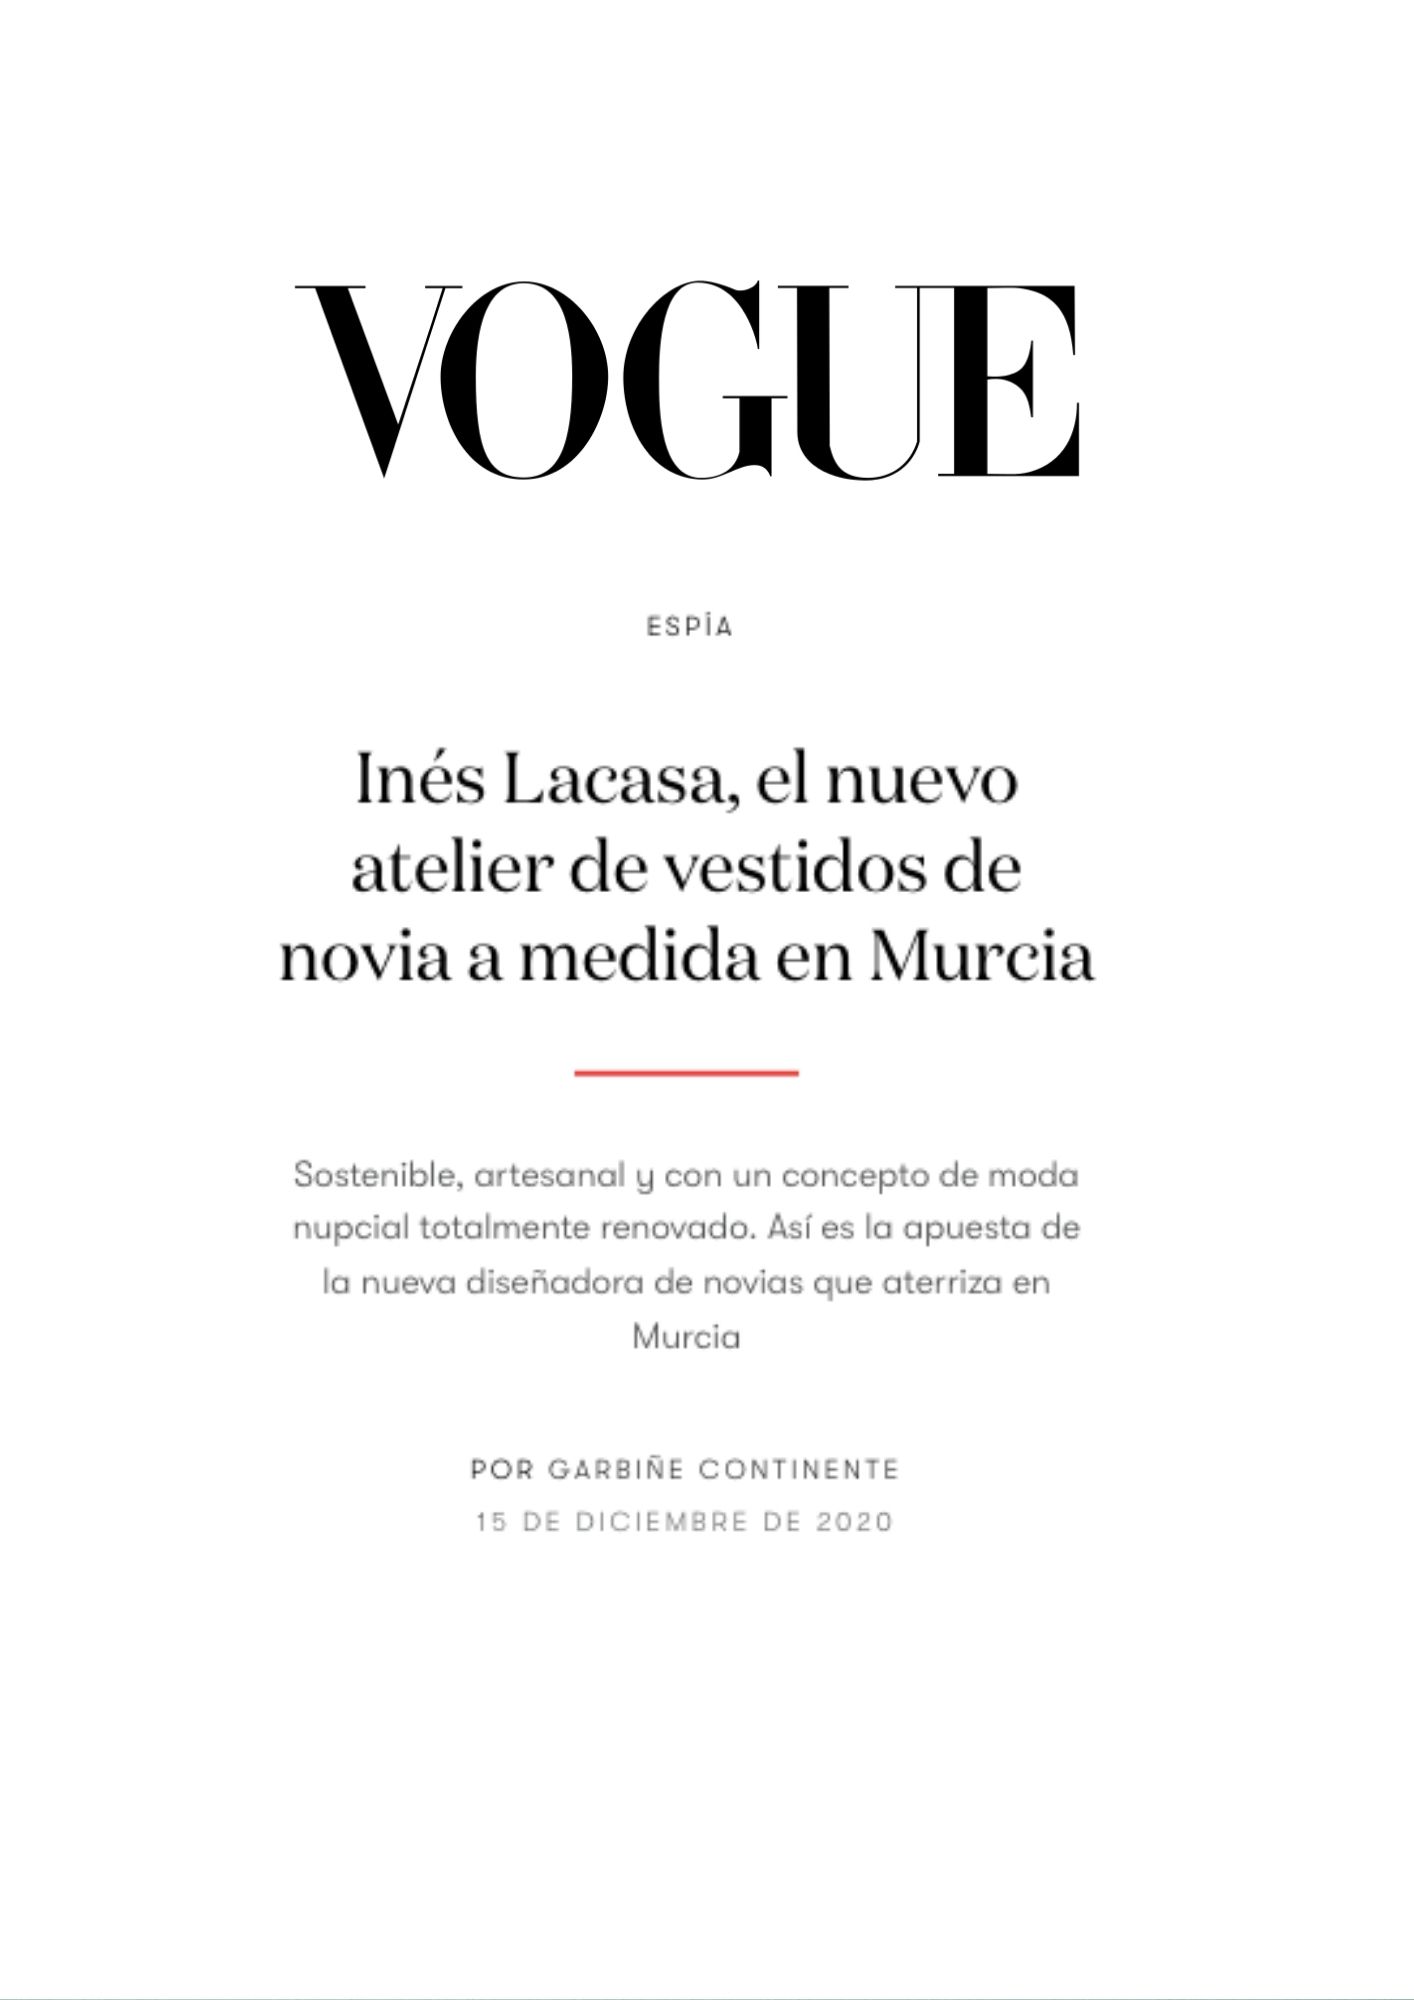 Vogue Novias